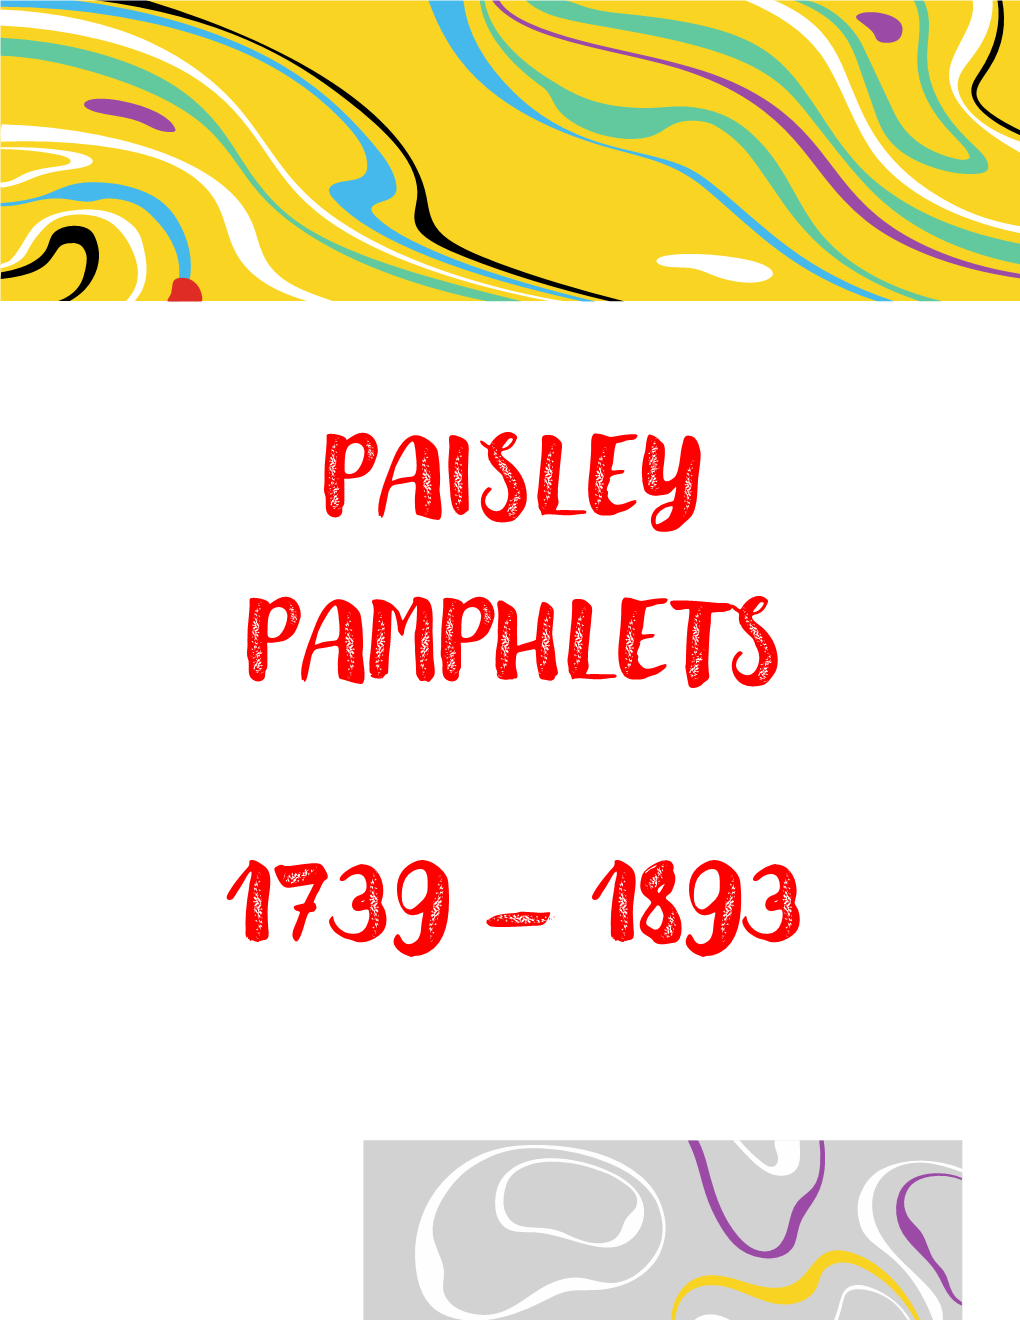 Paisley Pamphlets 1739